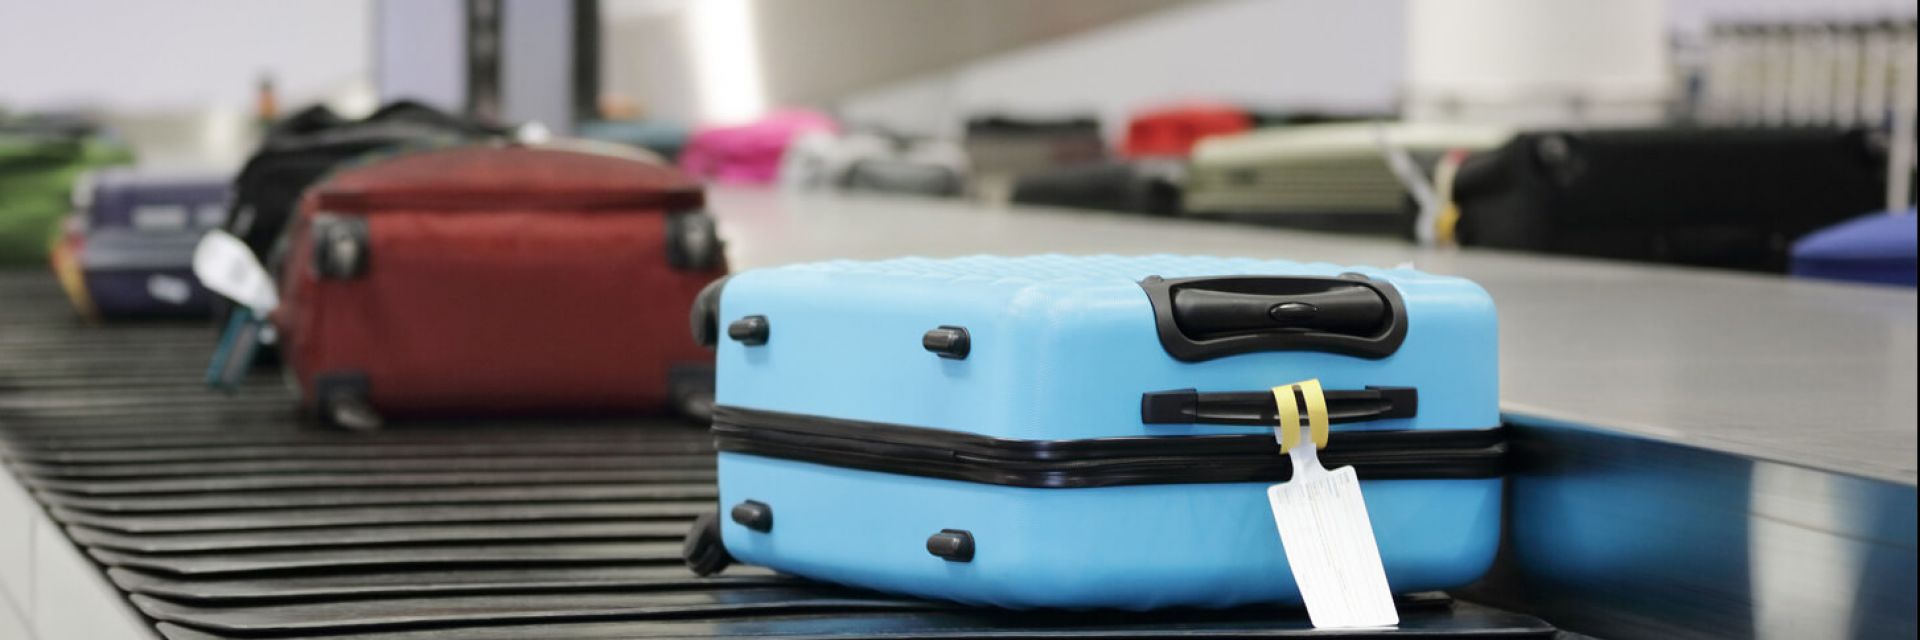 Extravio de bagagem: o que fazer nesse caso e como evitar?